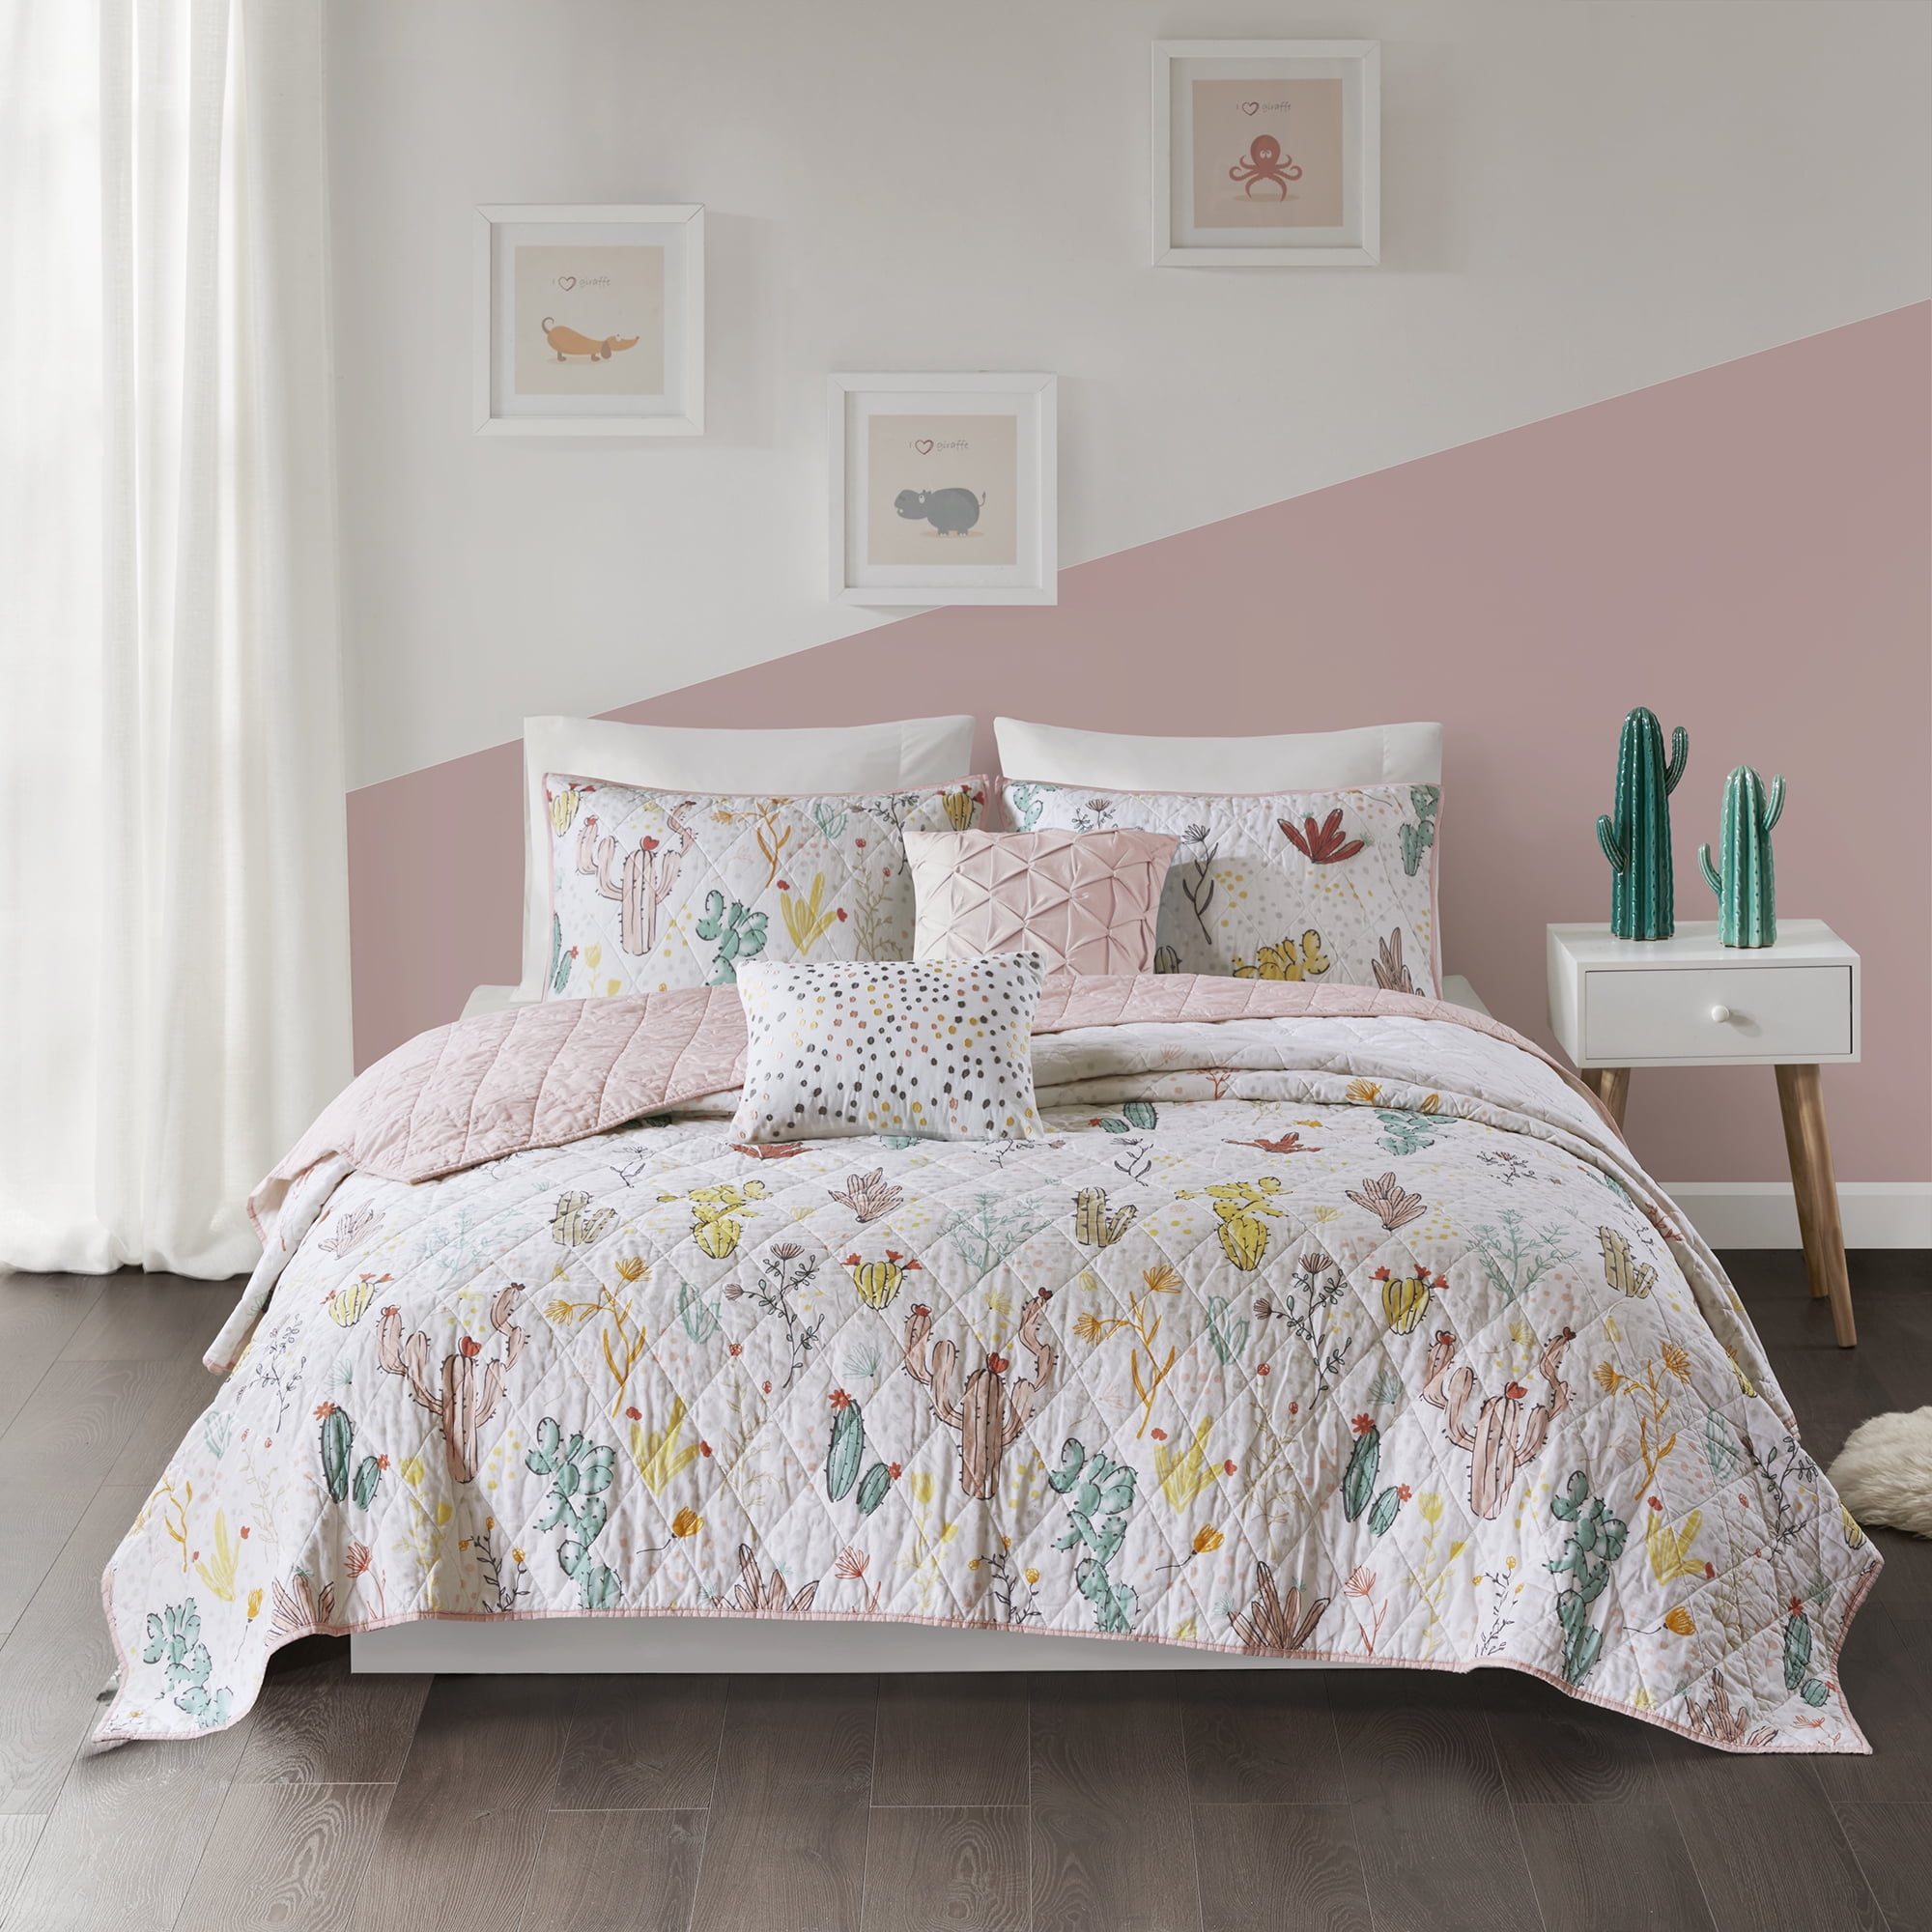 Lola Flora Reversible Cotton Quilt Set Bedspreads Coverlet 